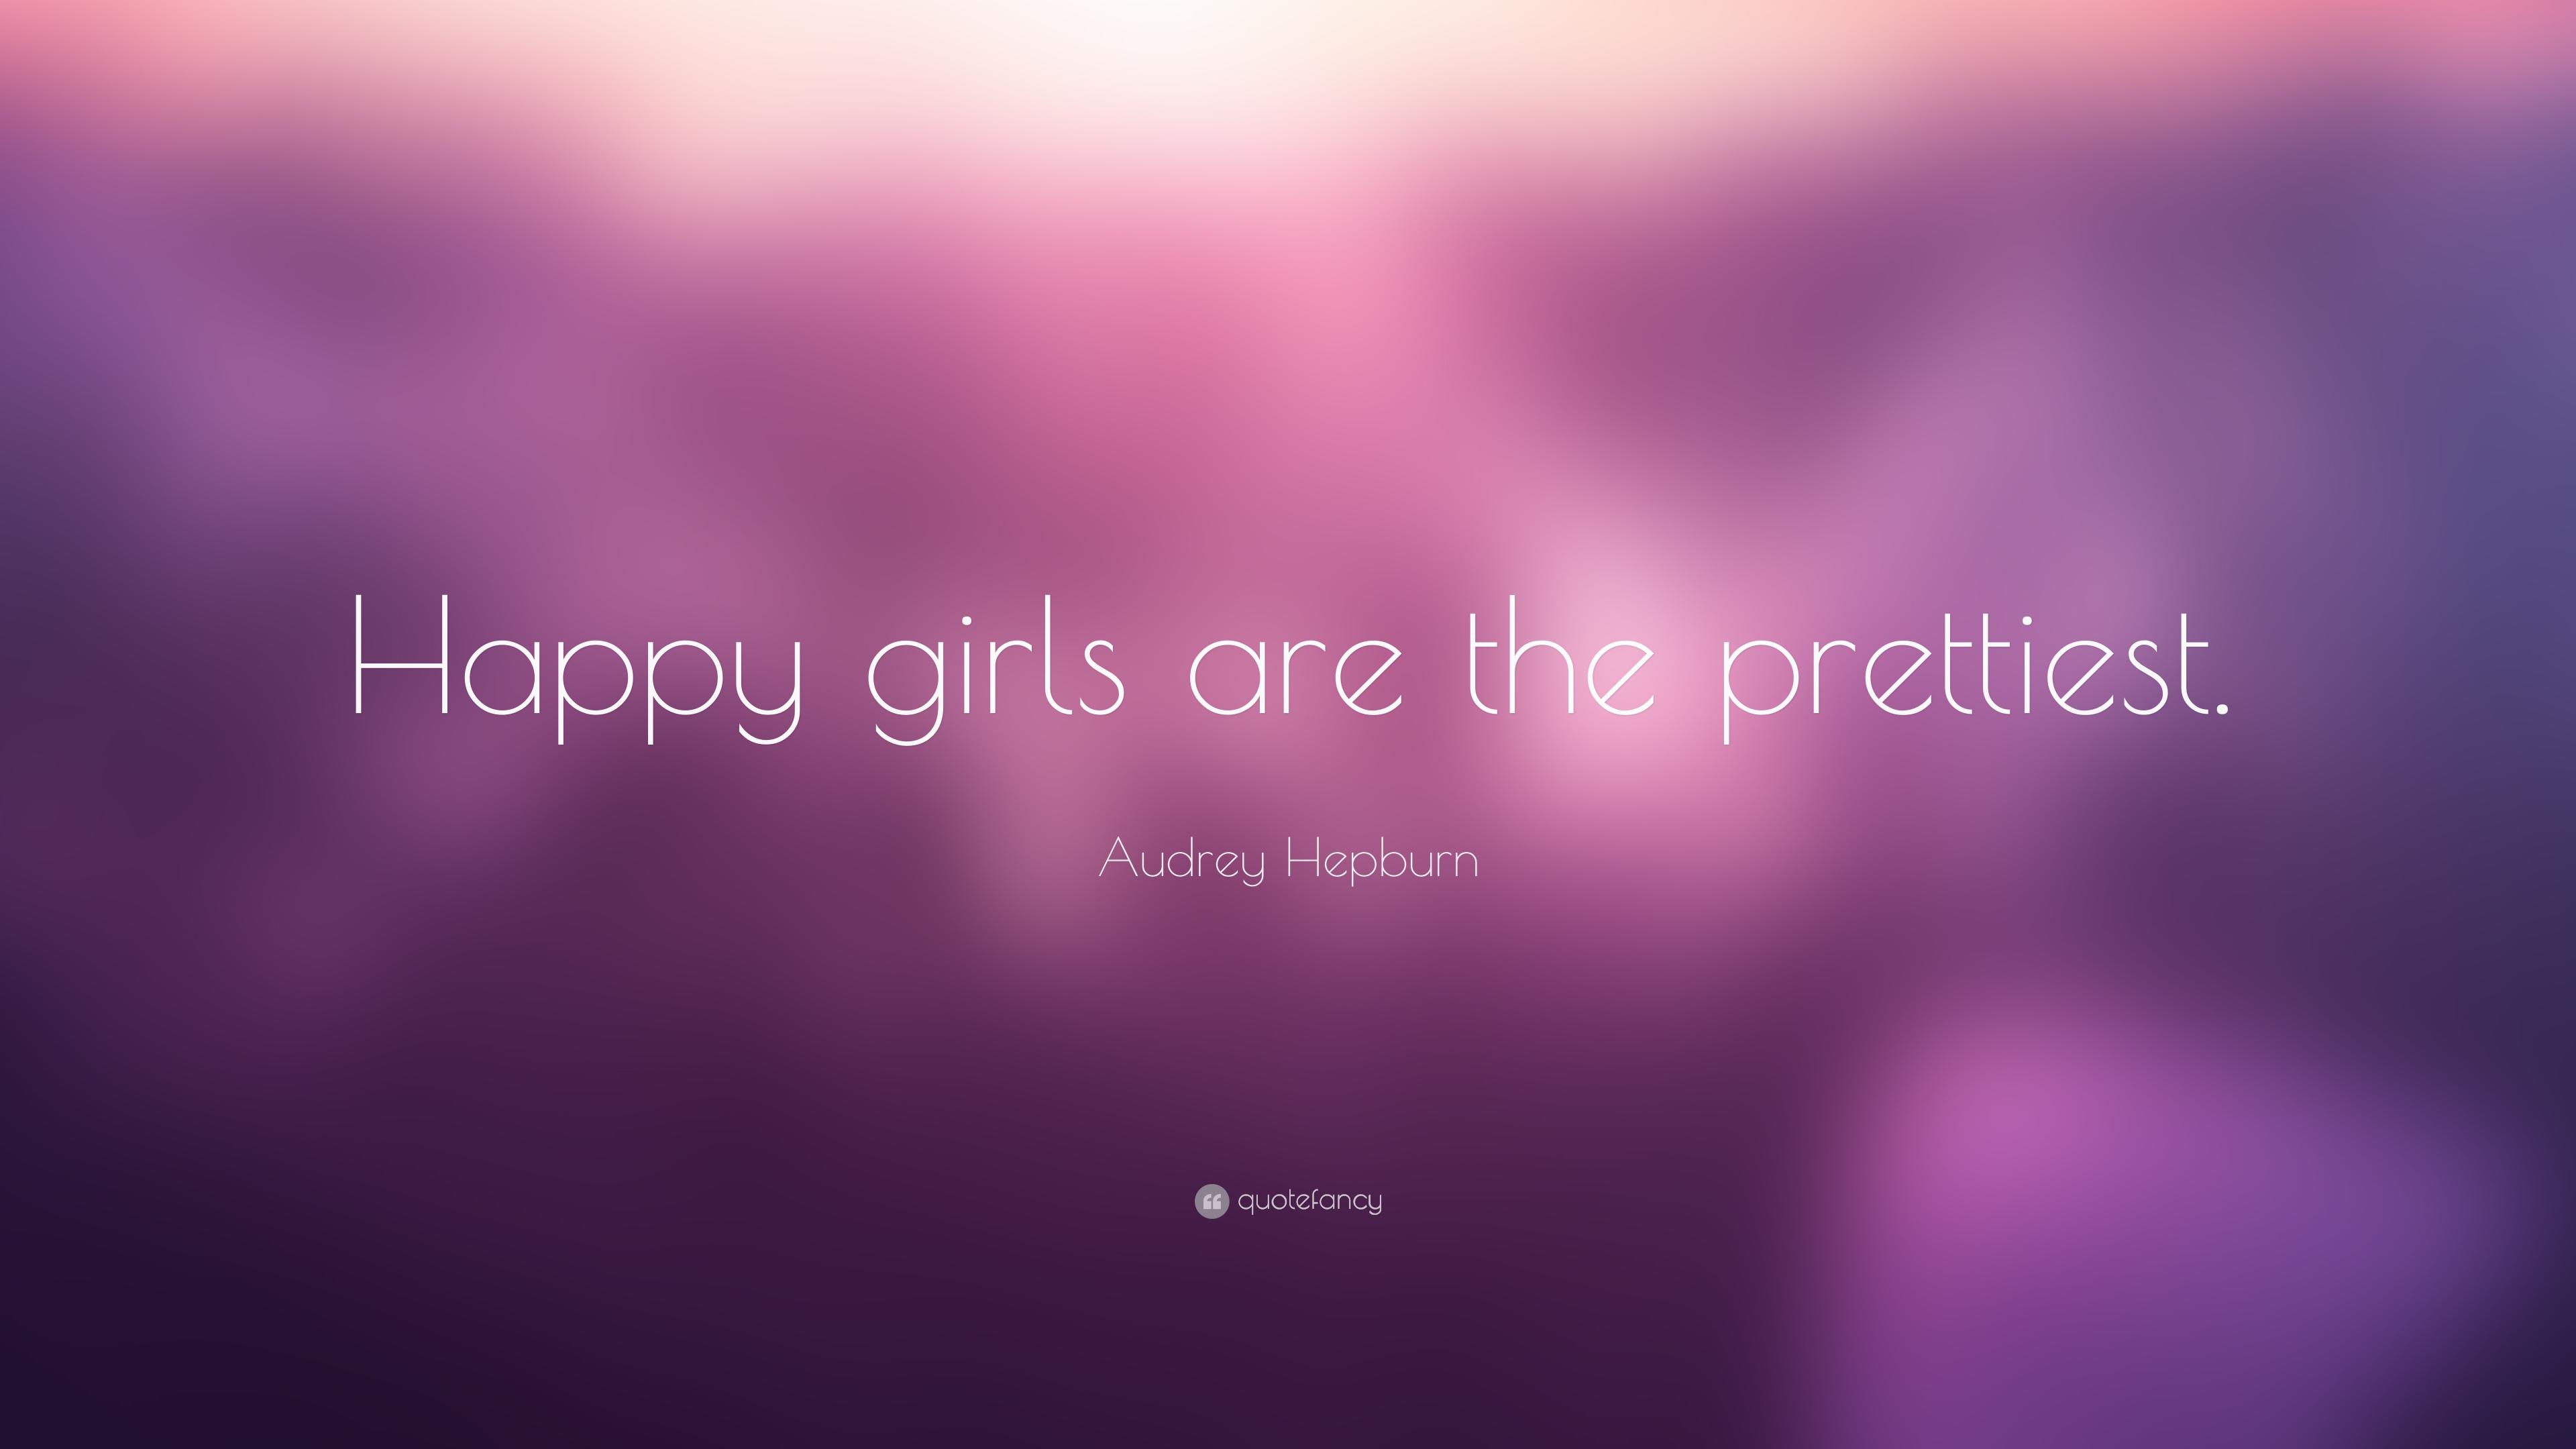 Audrey Hepburn Quote: “Happy girls are the prettiest.” (22 wallpaper)